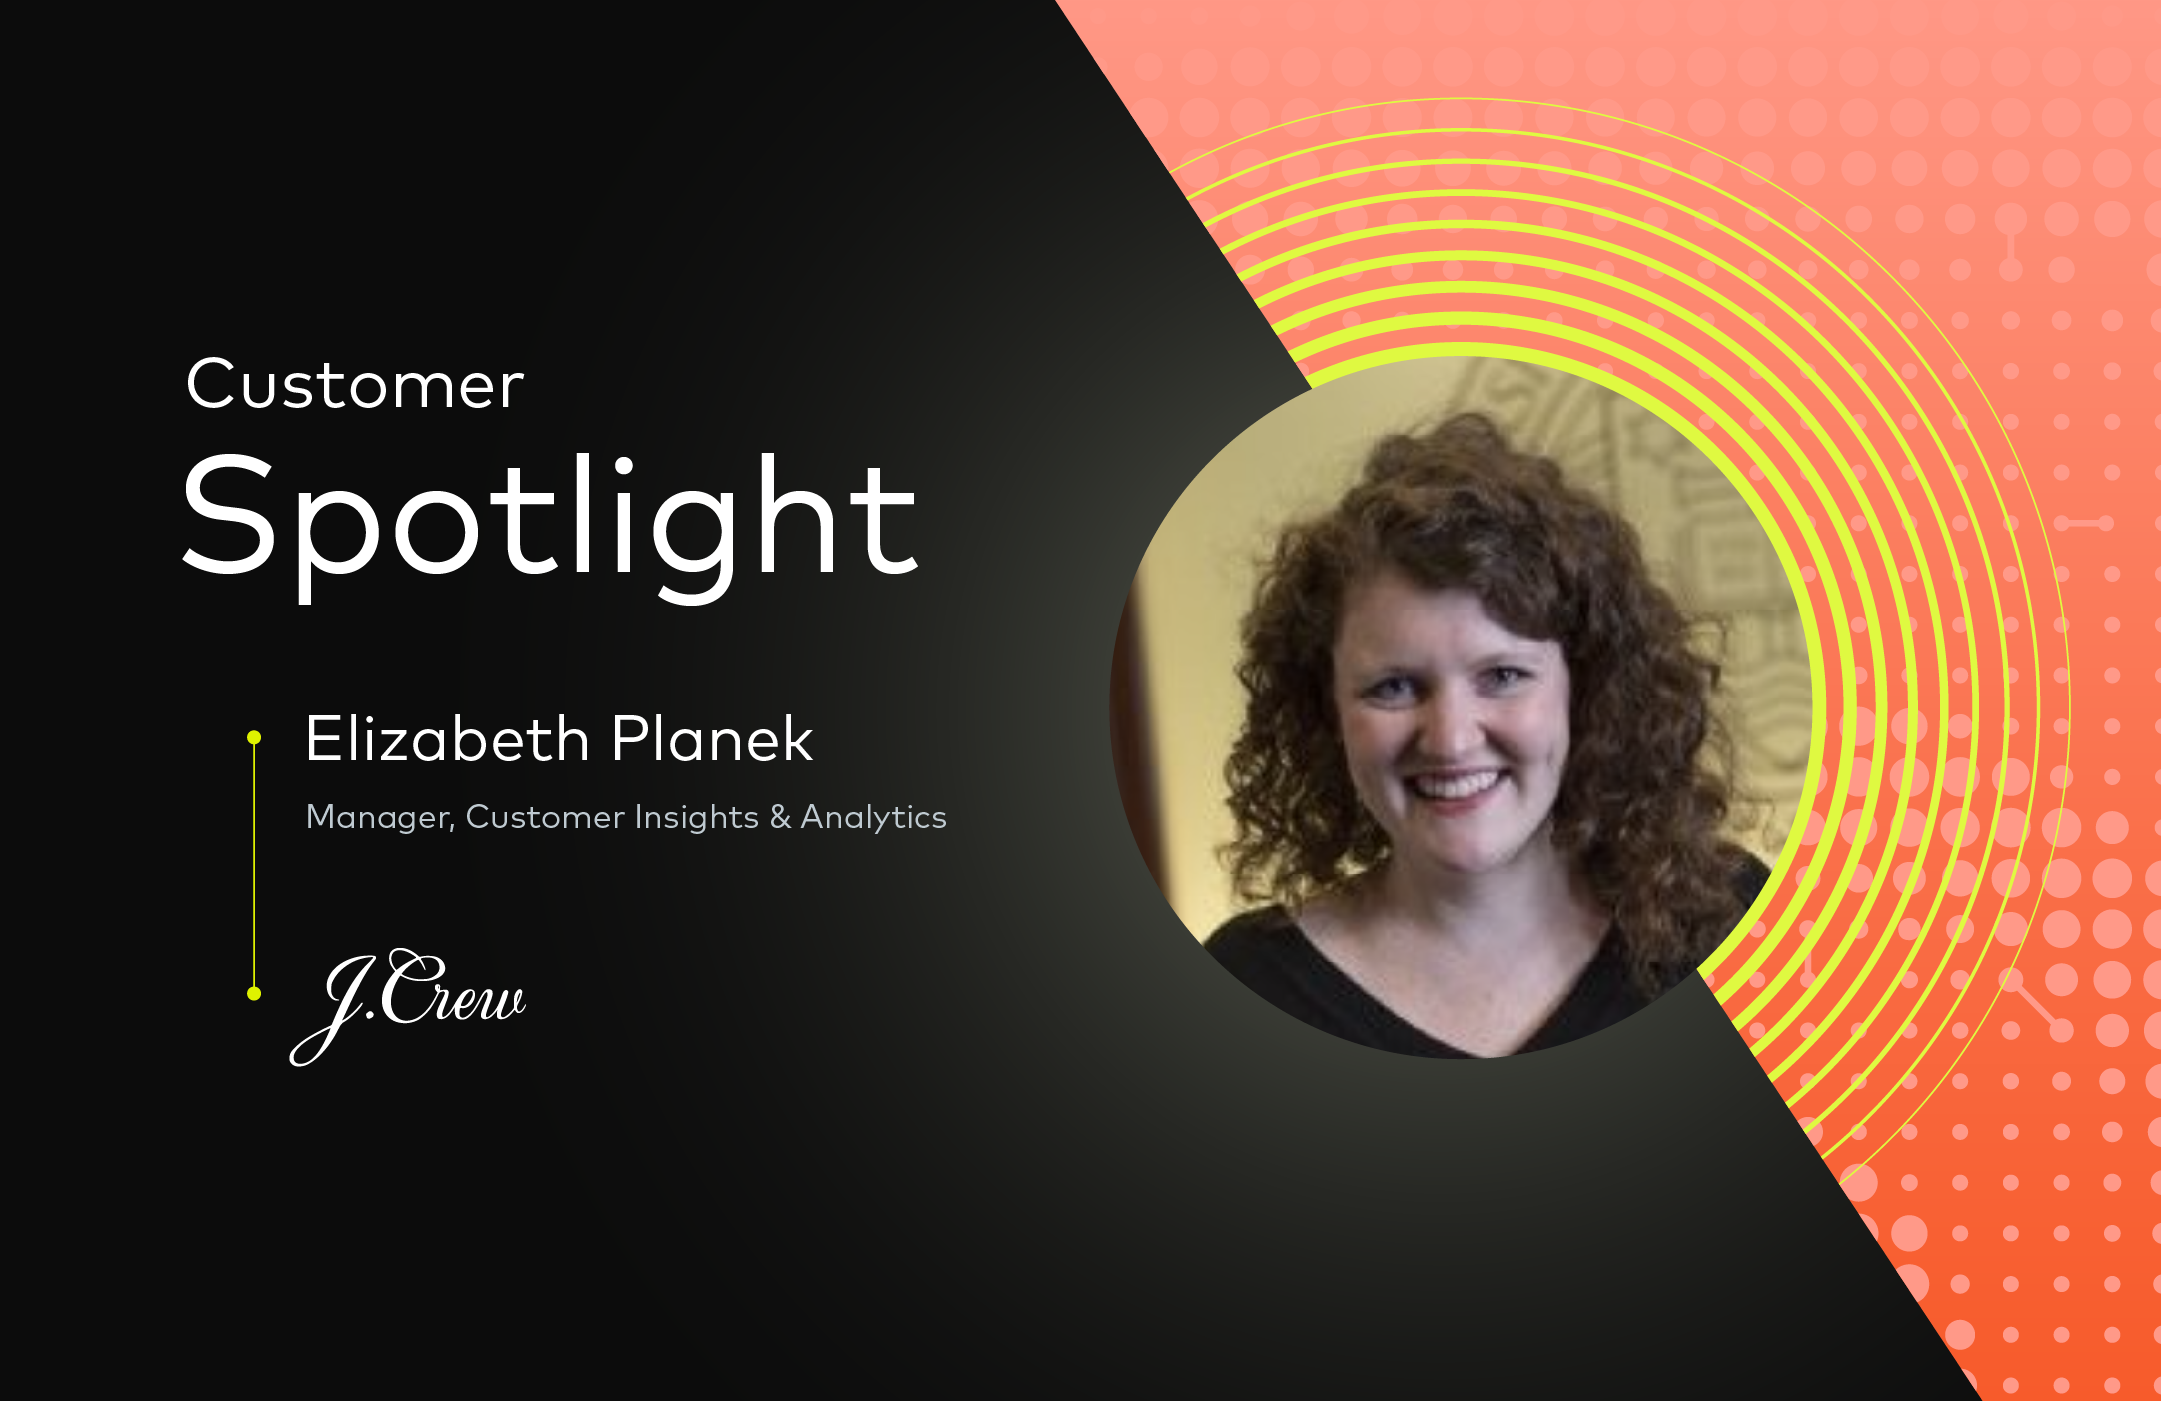 Customer Spotlight: Elizabeth Planek, Manager, Customer Insights & Analytics at J Crew